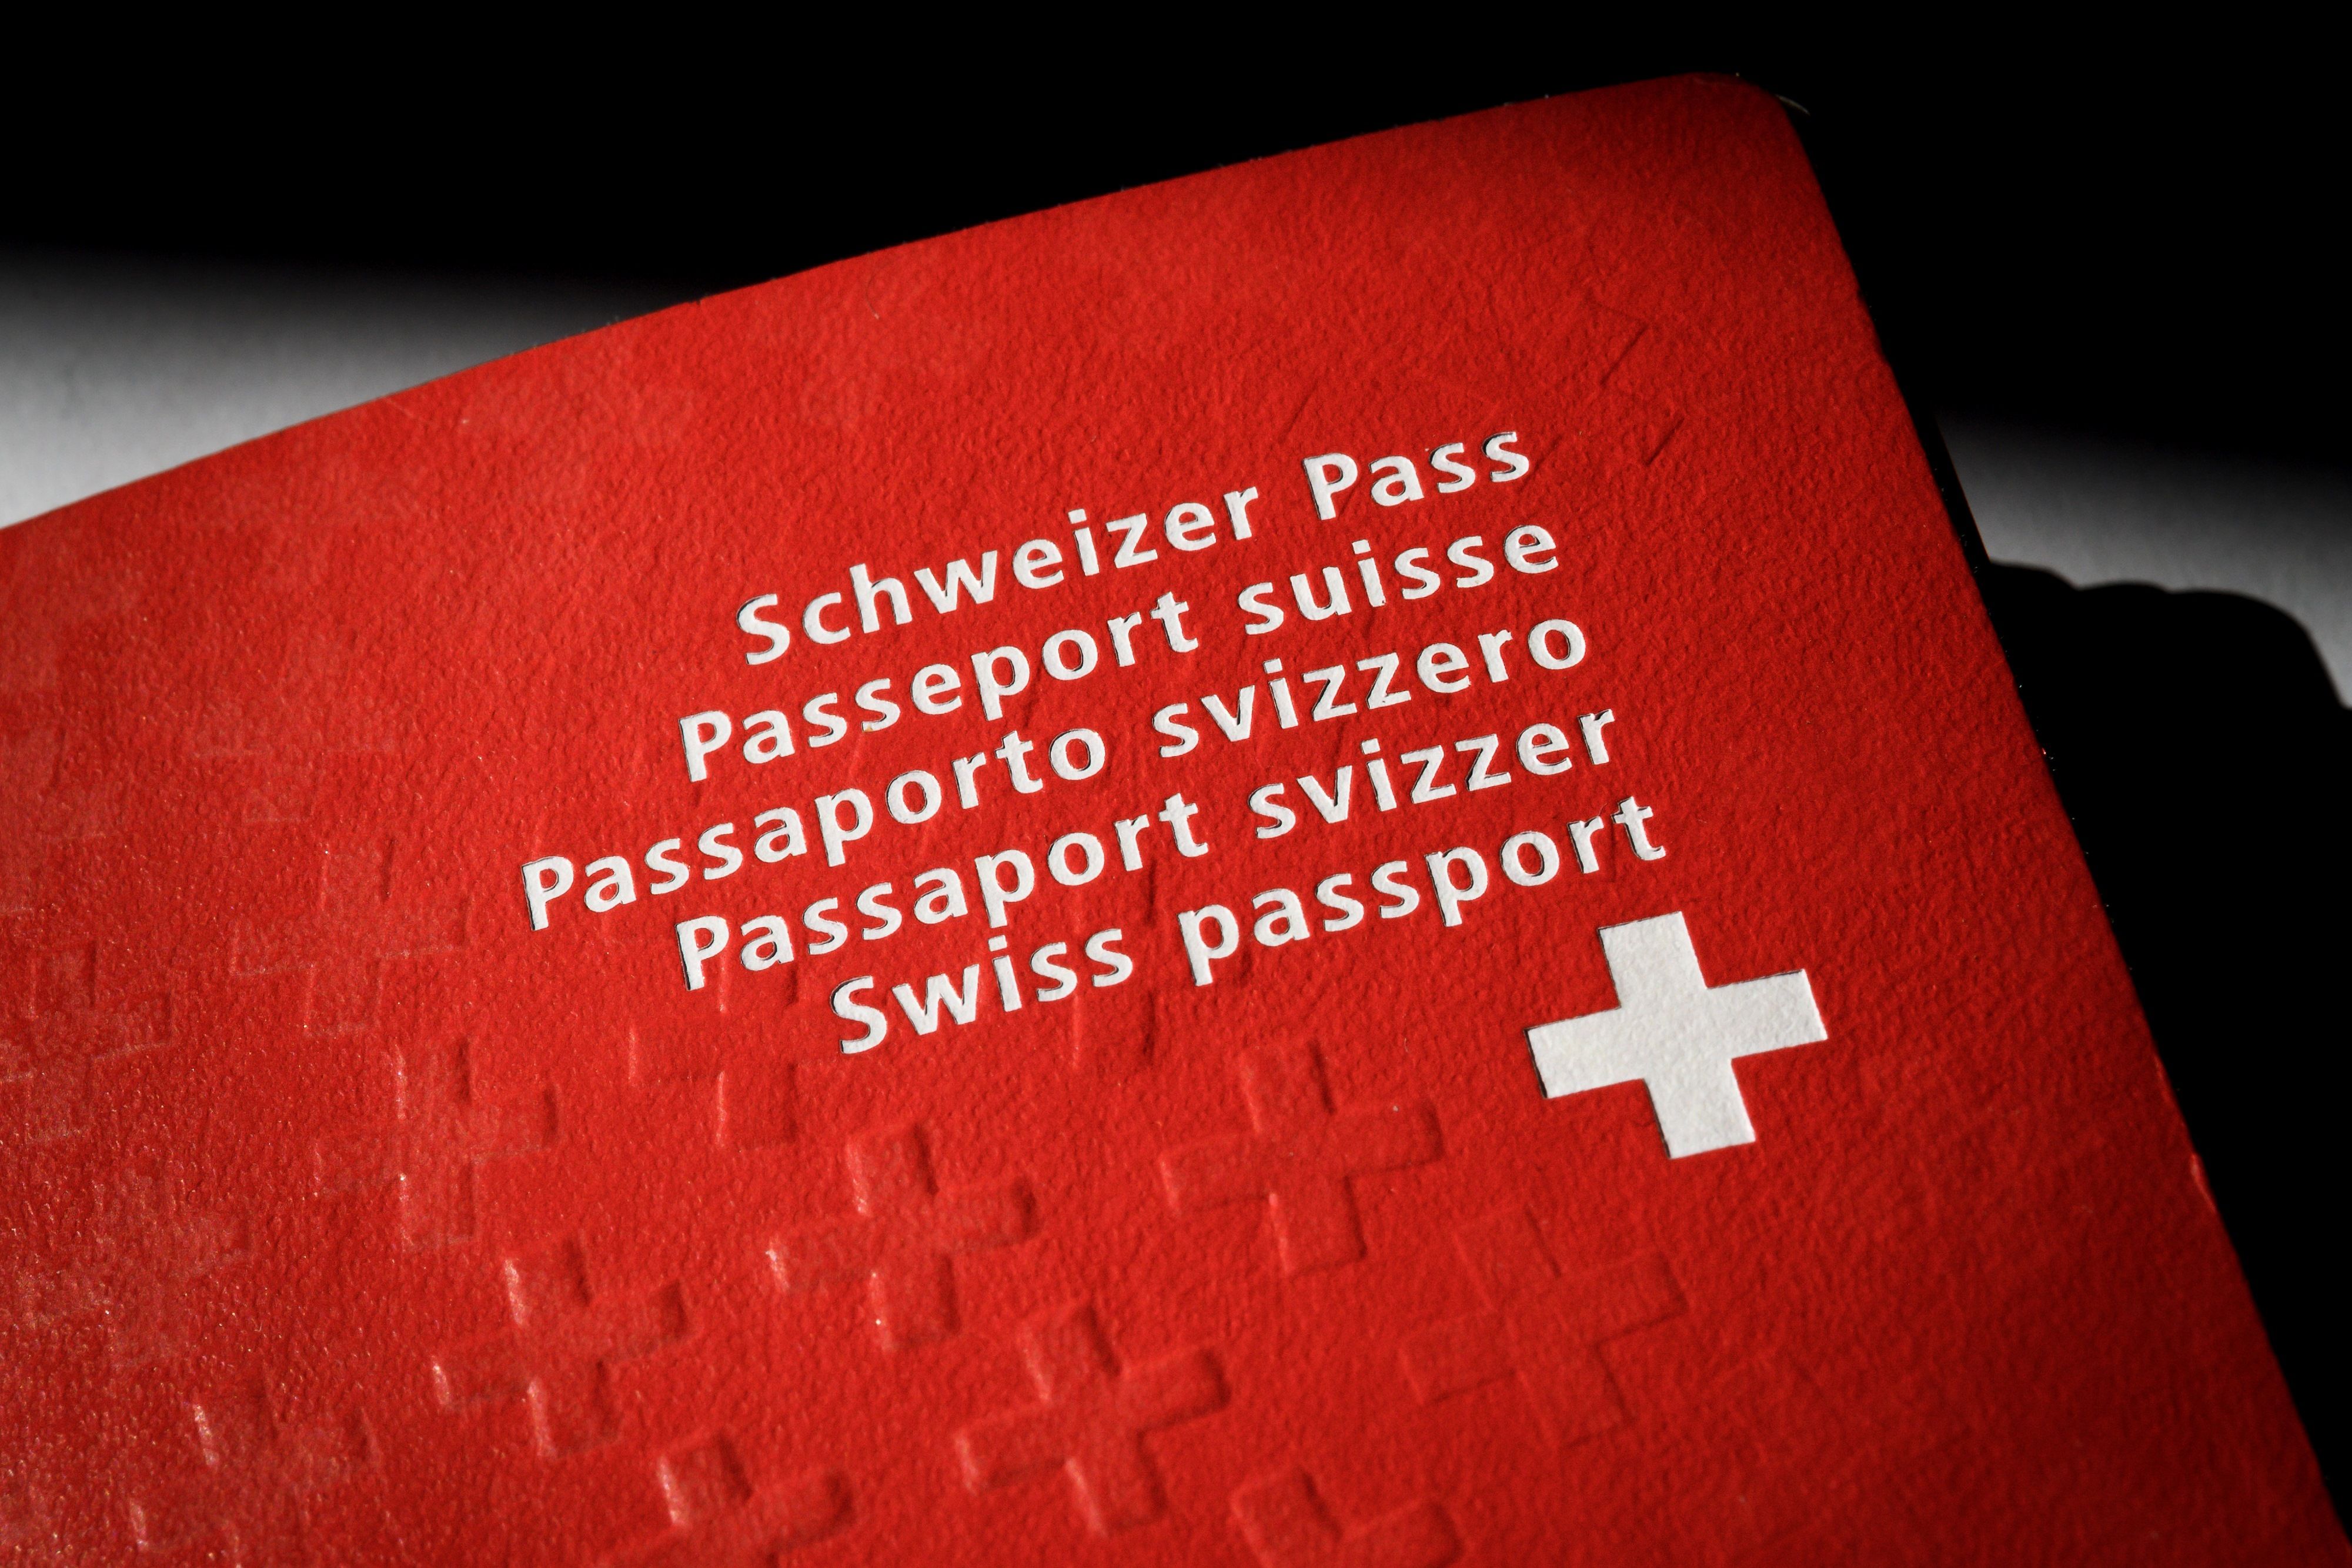 أغلب سكان سويسرا يتحدث لغتين فأكثر